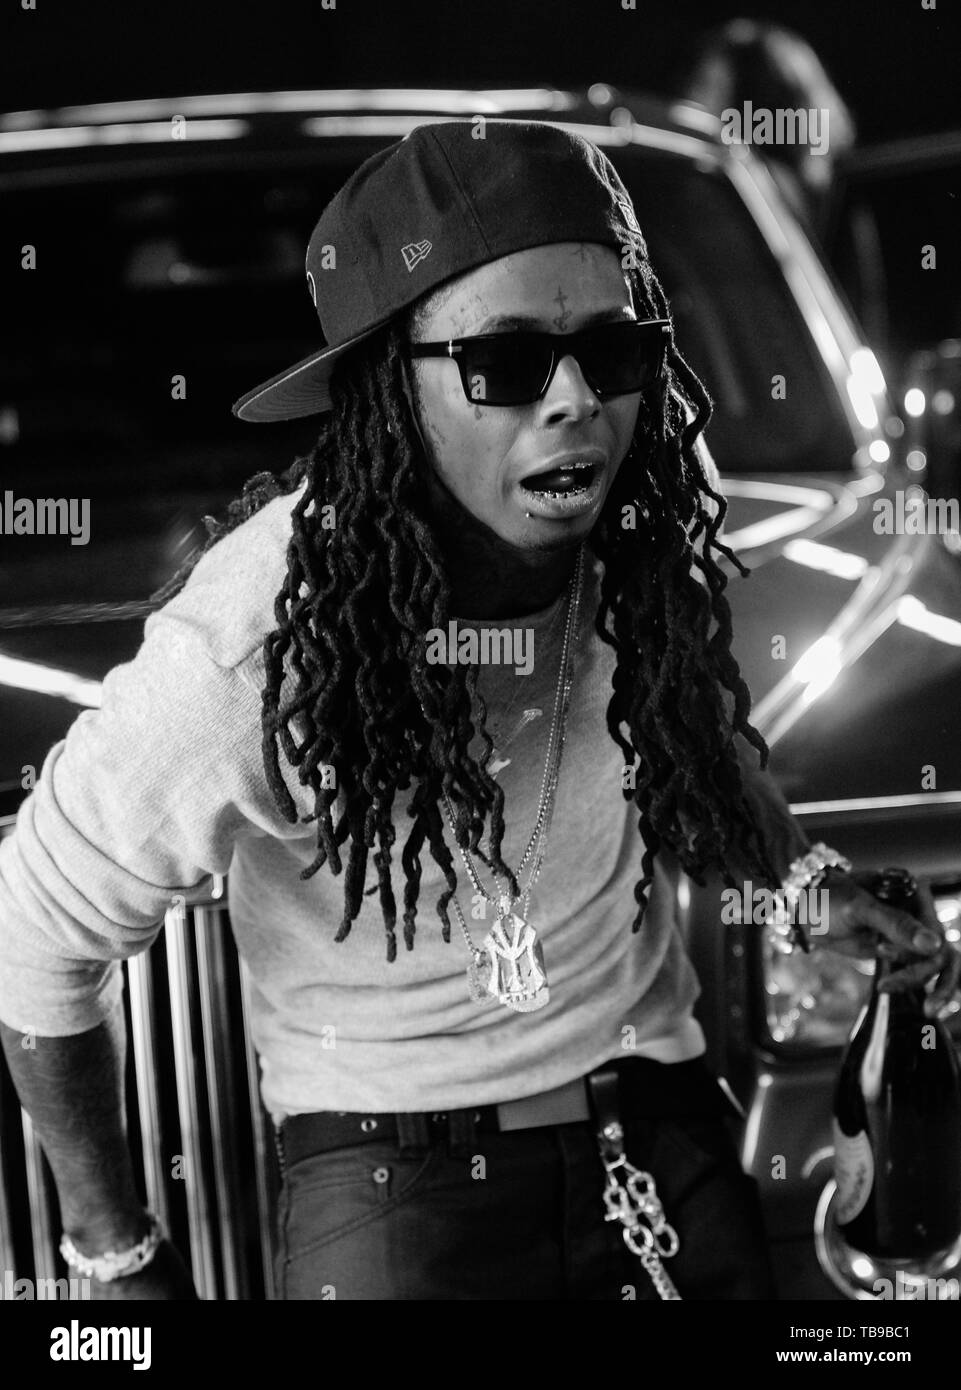 Le rappeur Lil Wayne sur l'ensemble de sa musique vidéo avec les jeunes de l'argent appelé "toutes les filles" tourné à Los Angeles, CA le 14 février 2009. Banque D'Images